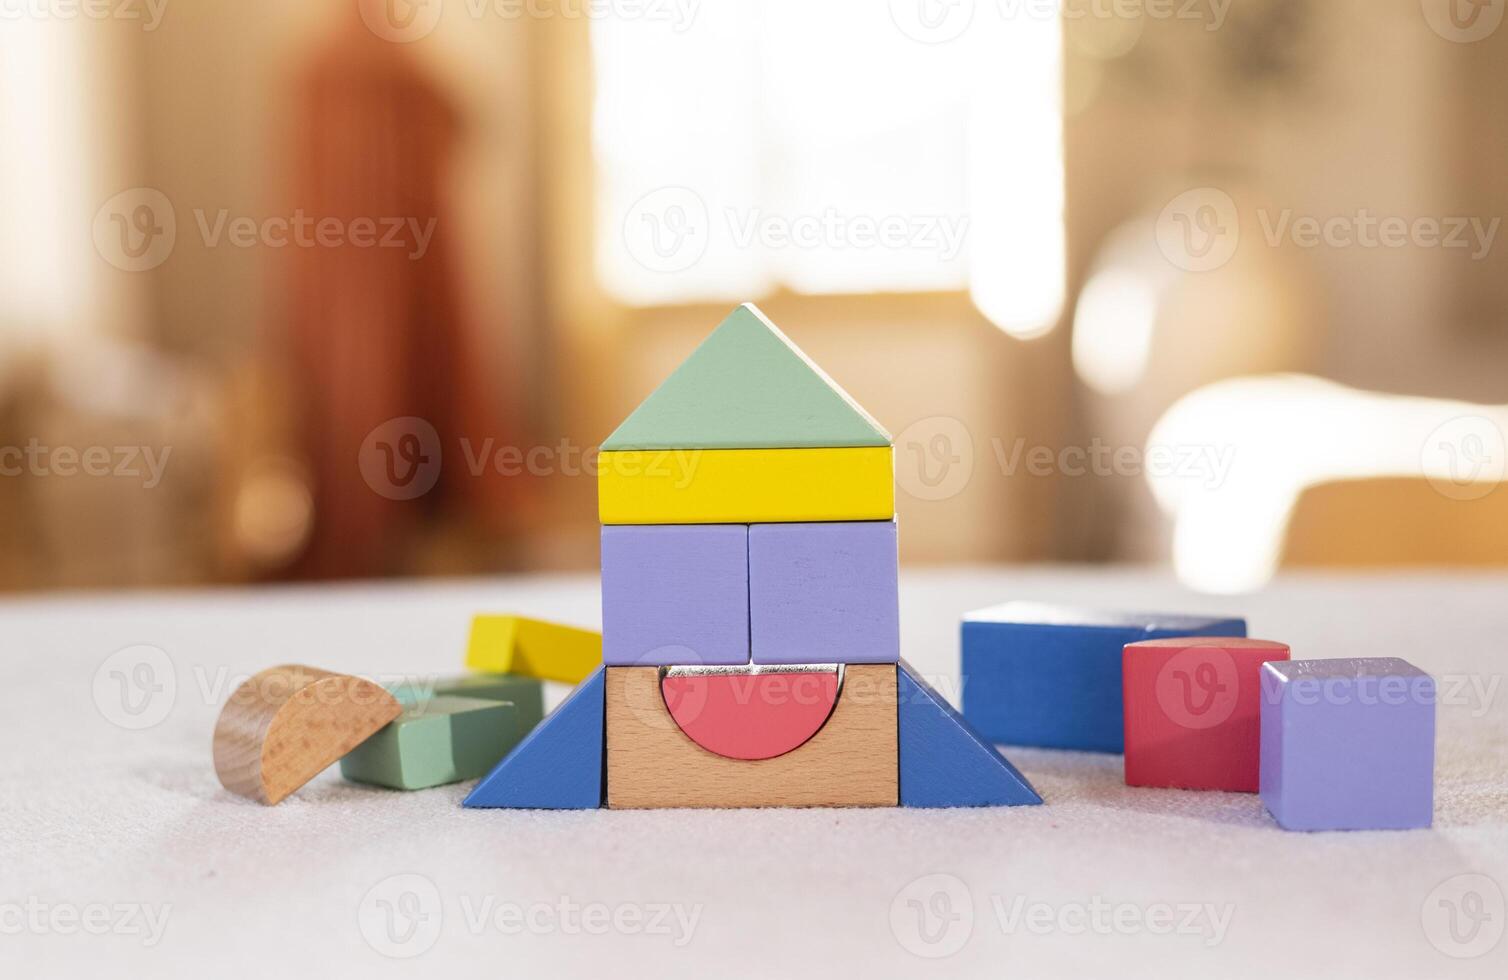 färgrik trä- block på Hem tabell. kreativitet leksaker. barn byggnad block. geometrisk former - cirkel, triangel, fyrkant, rektangel. de begrepp av logisk tänkande. foto